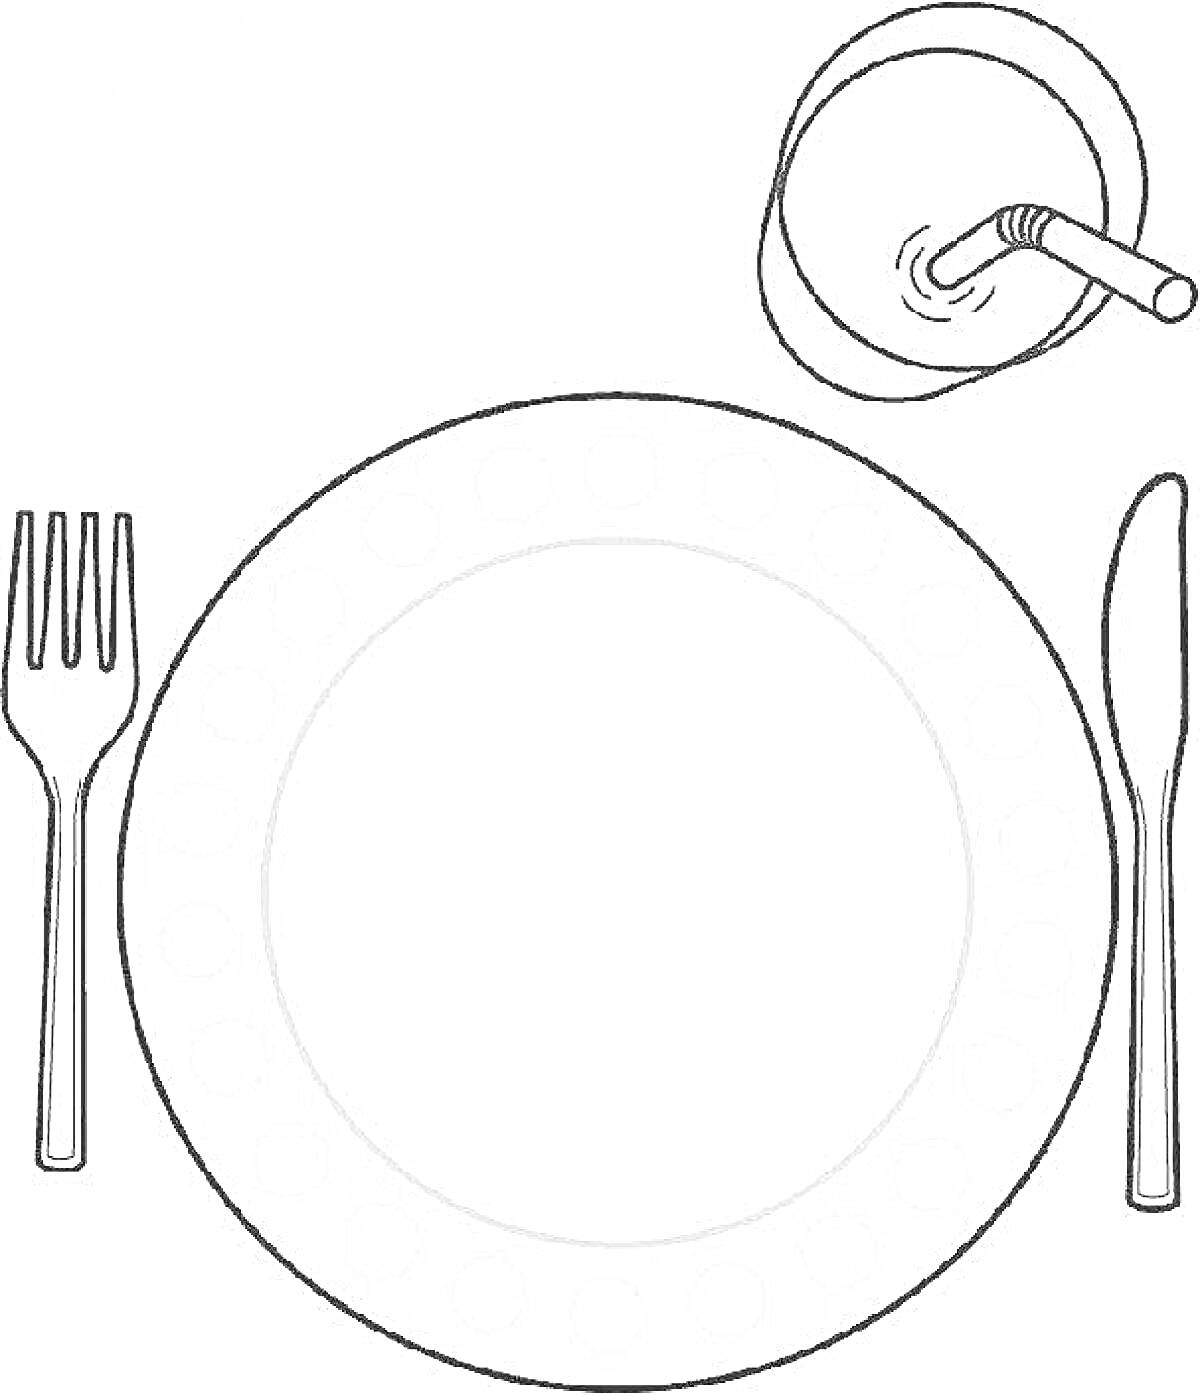 Раскраска Раскраска с тарелкой, вилкой, ножом и стаканом с соломинкой